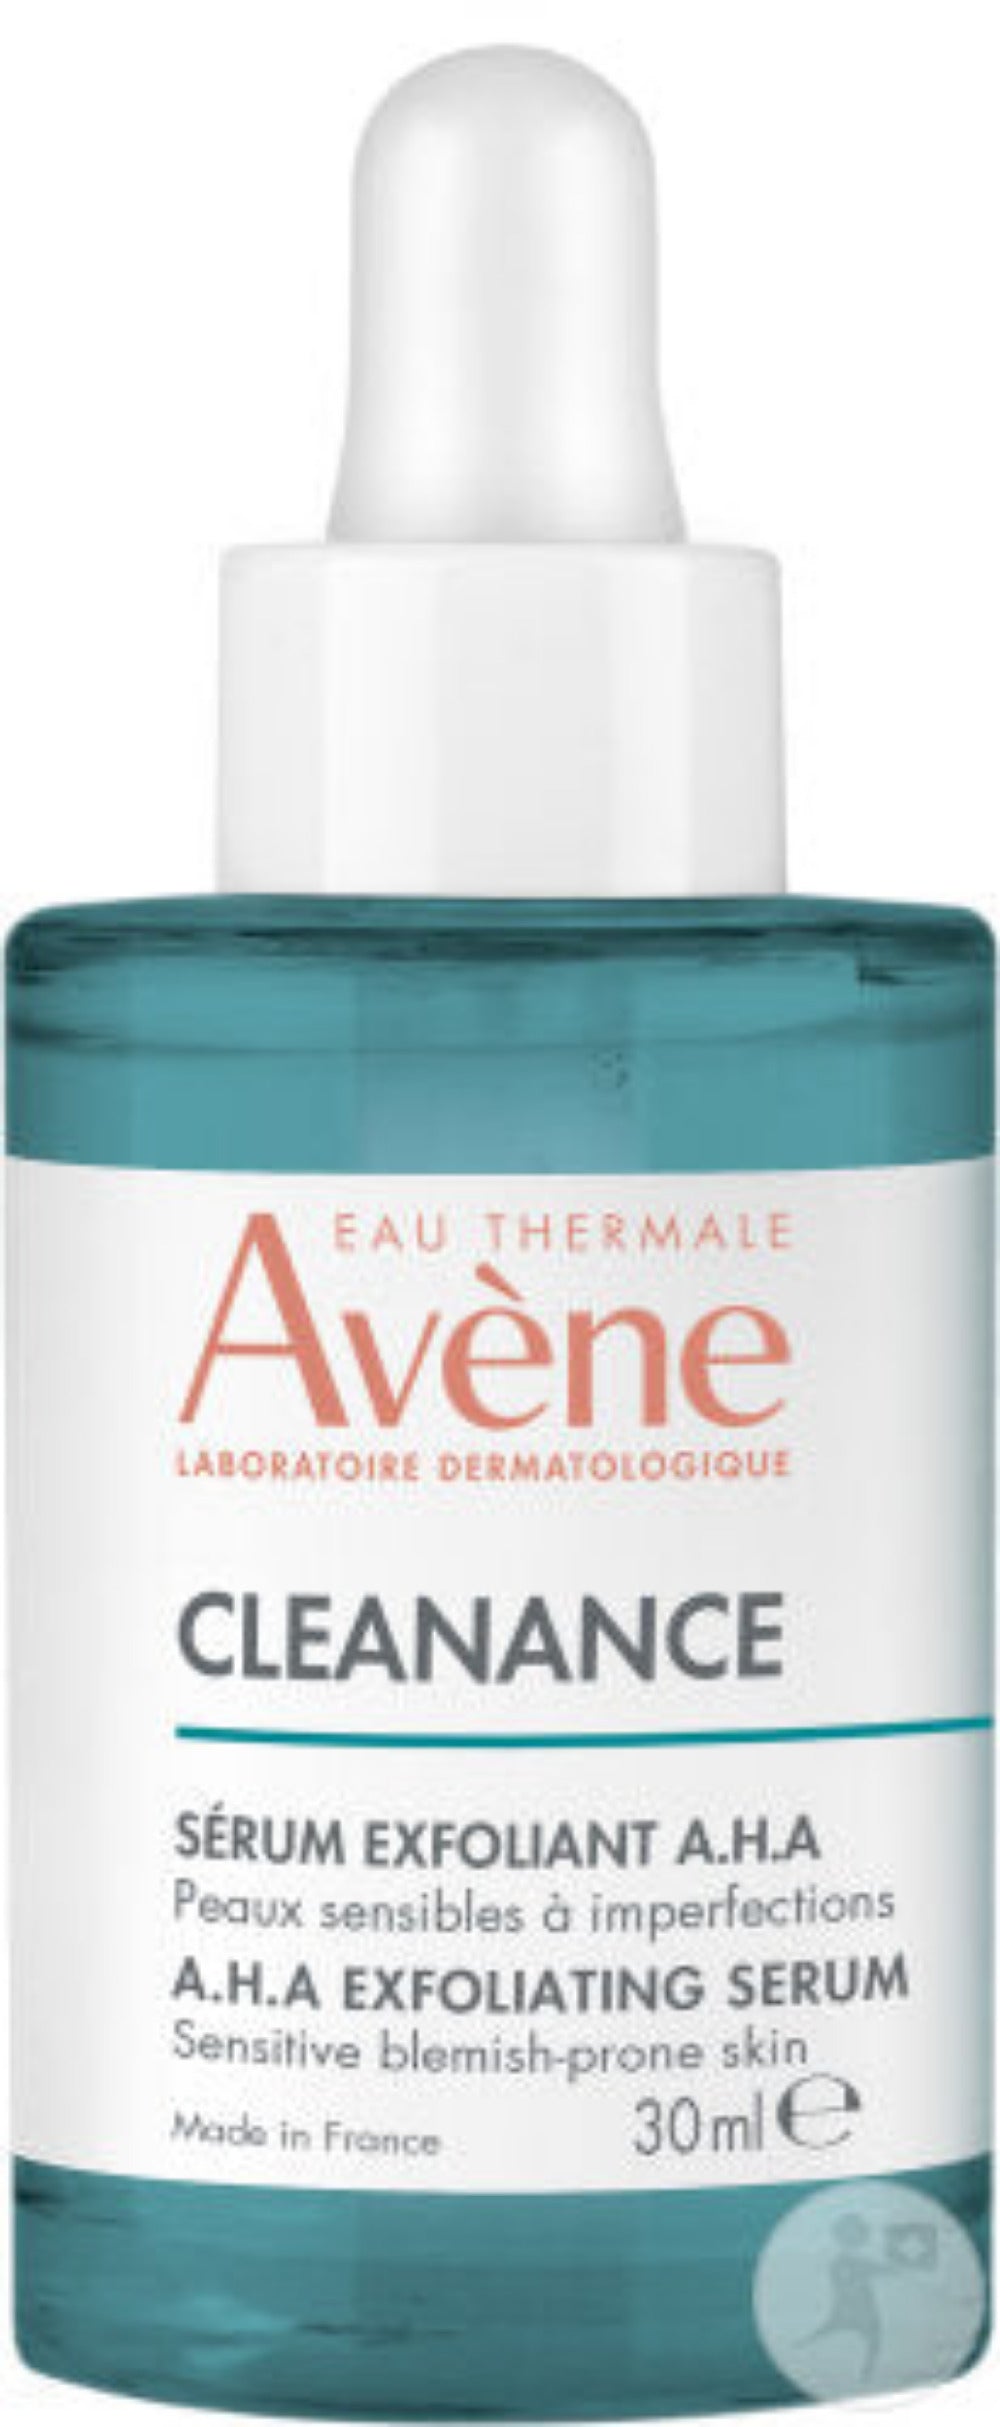 Avene Cleanance AHA Exfoliating Serum - 30 ml